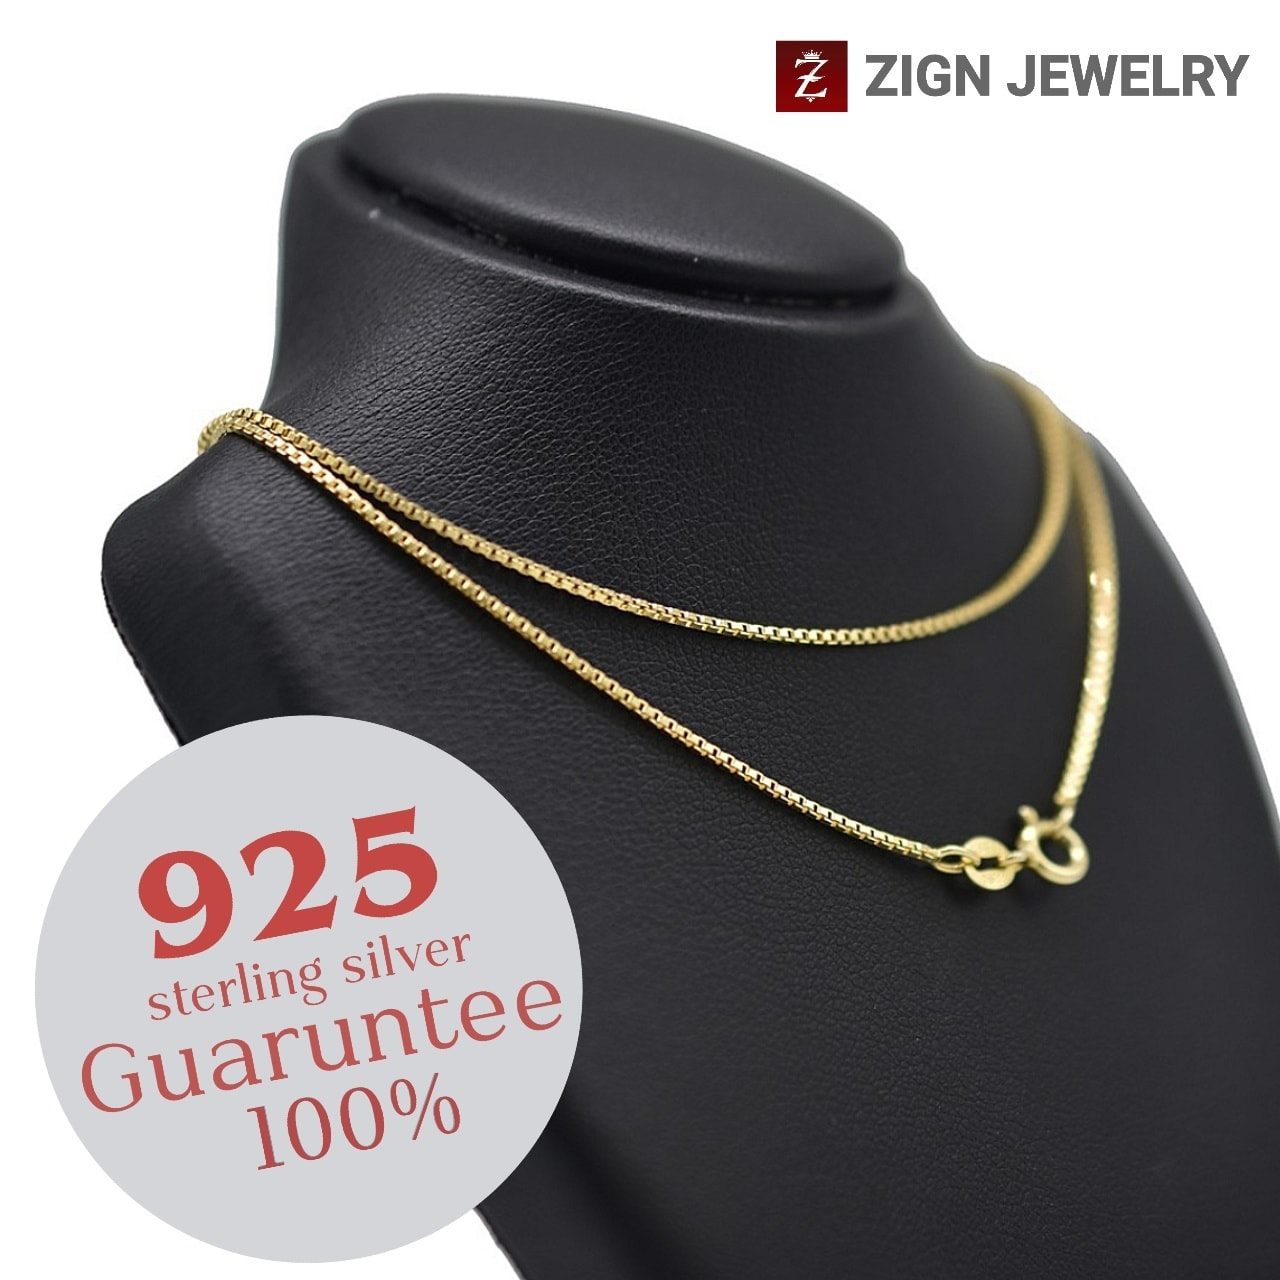 Zign Jewelry สร้อยคอเงินแท้ (ITALY 925) ลายบ๊อกเชนรุ่นใหญ่NSY0002ของแท้100%มีบัตรรับประกัน